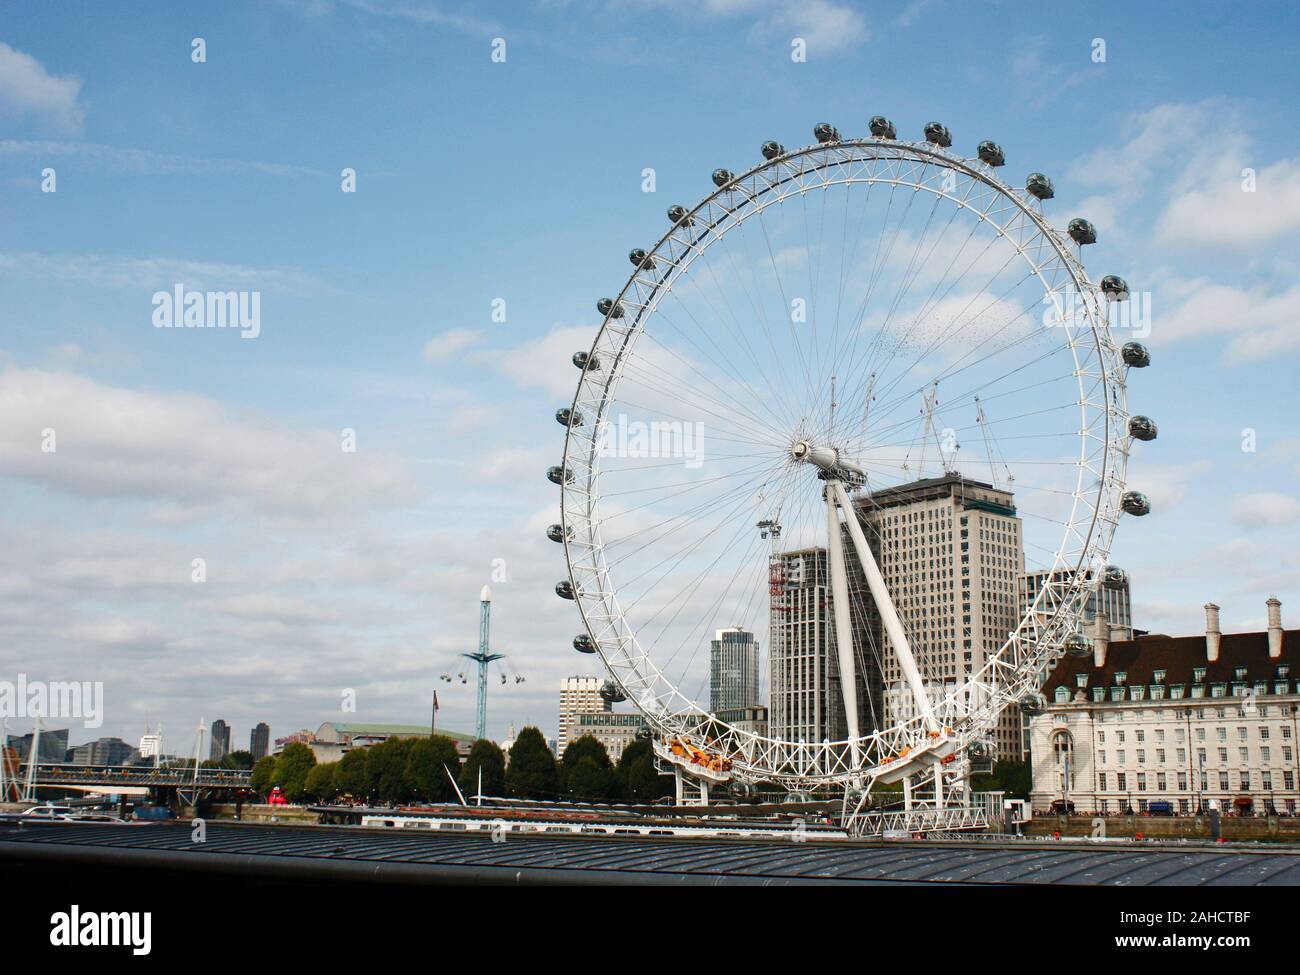 El London Eye, una noria gigante en Londres y la rueda de observación más alta voladizo Foto de stock